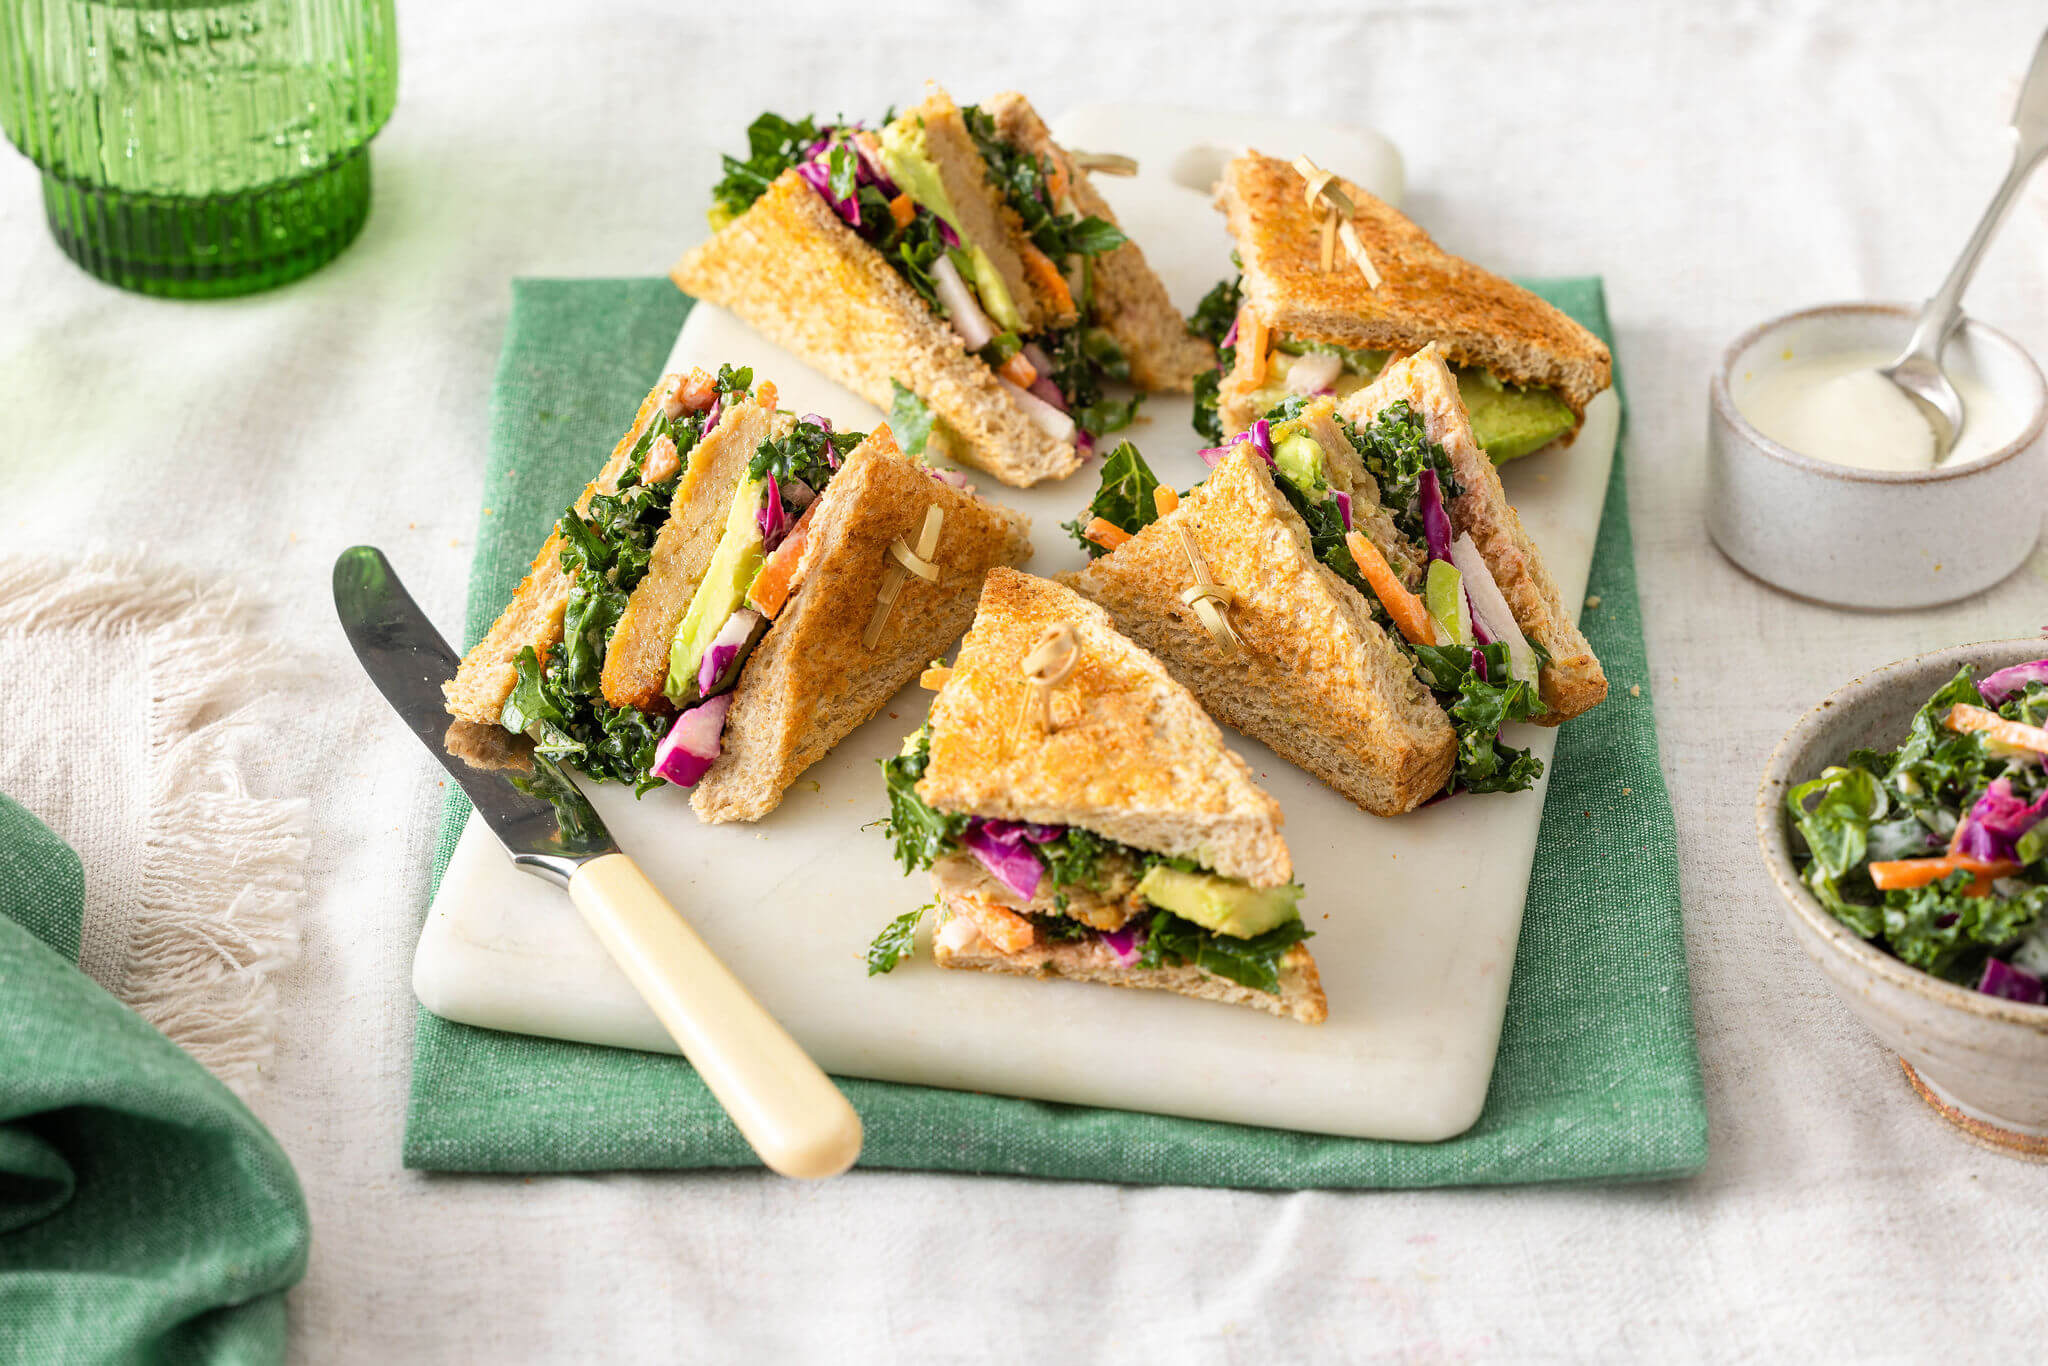 Vegie Schnitzel sandwich with kale coleslaw